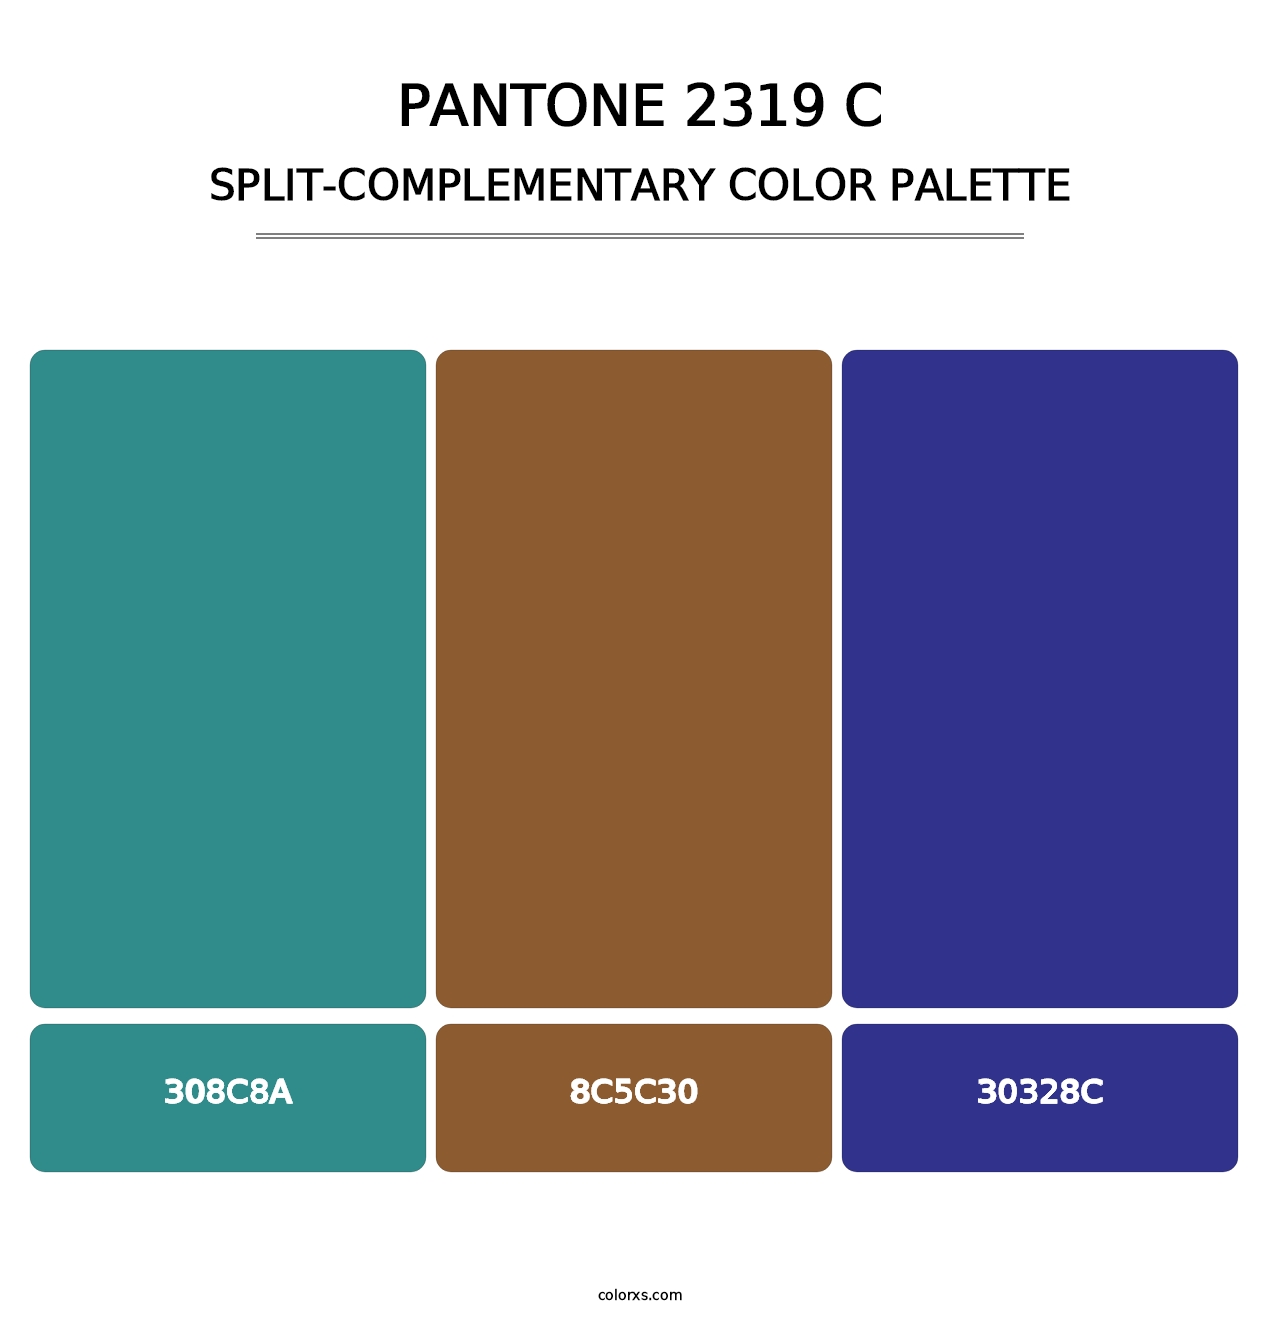 PANTONE 2319 C - Split-Complementary Color Palette